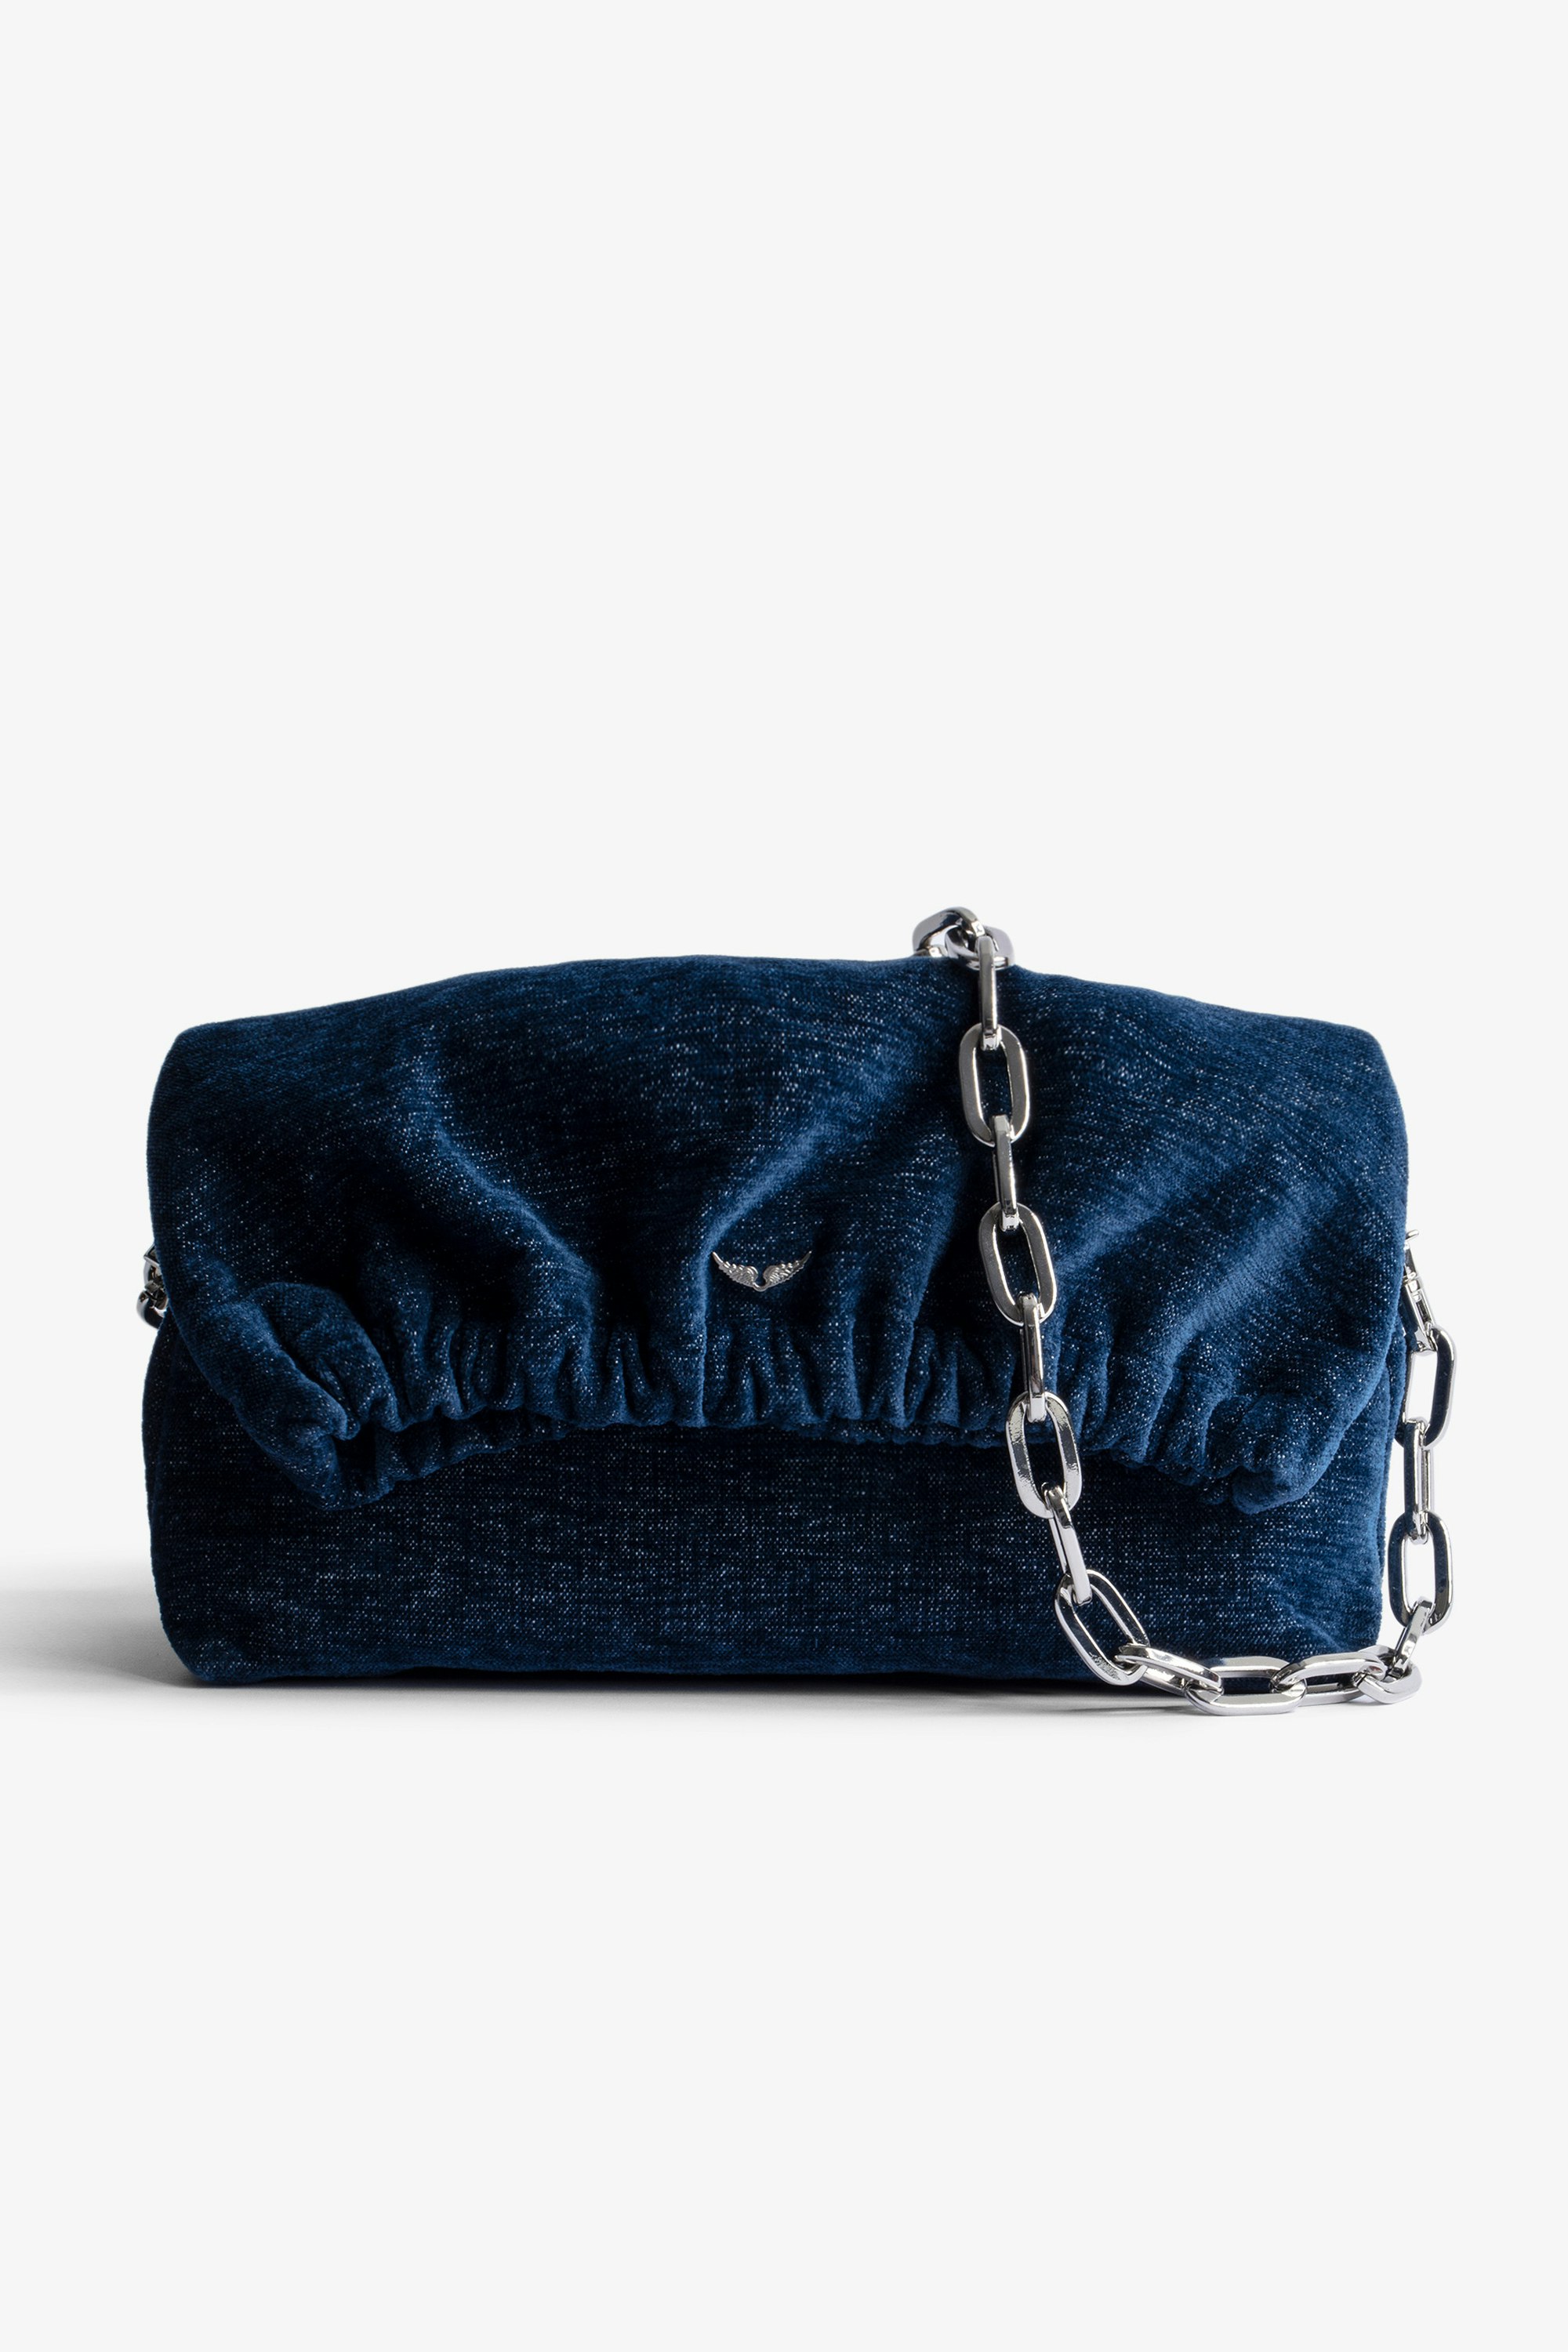 Tasche Rockyssime Damen-Clutch aus blauem Denim mit Metallkette